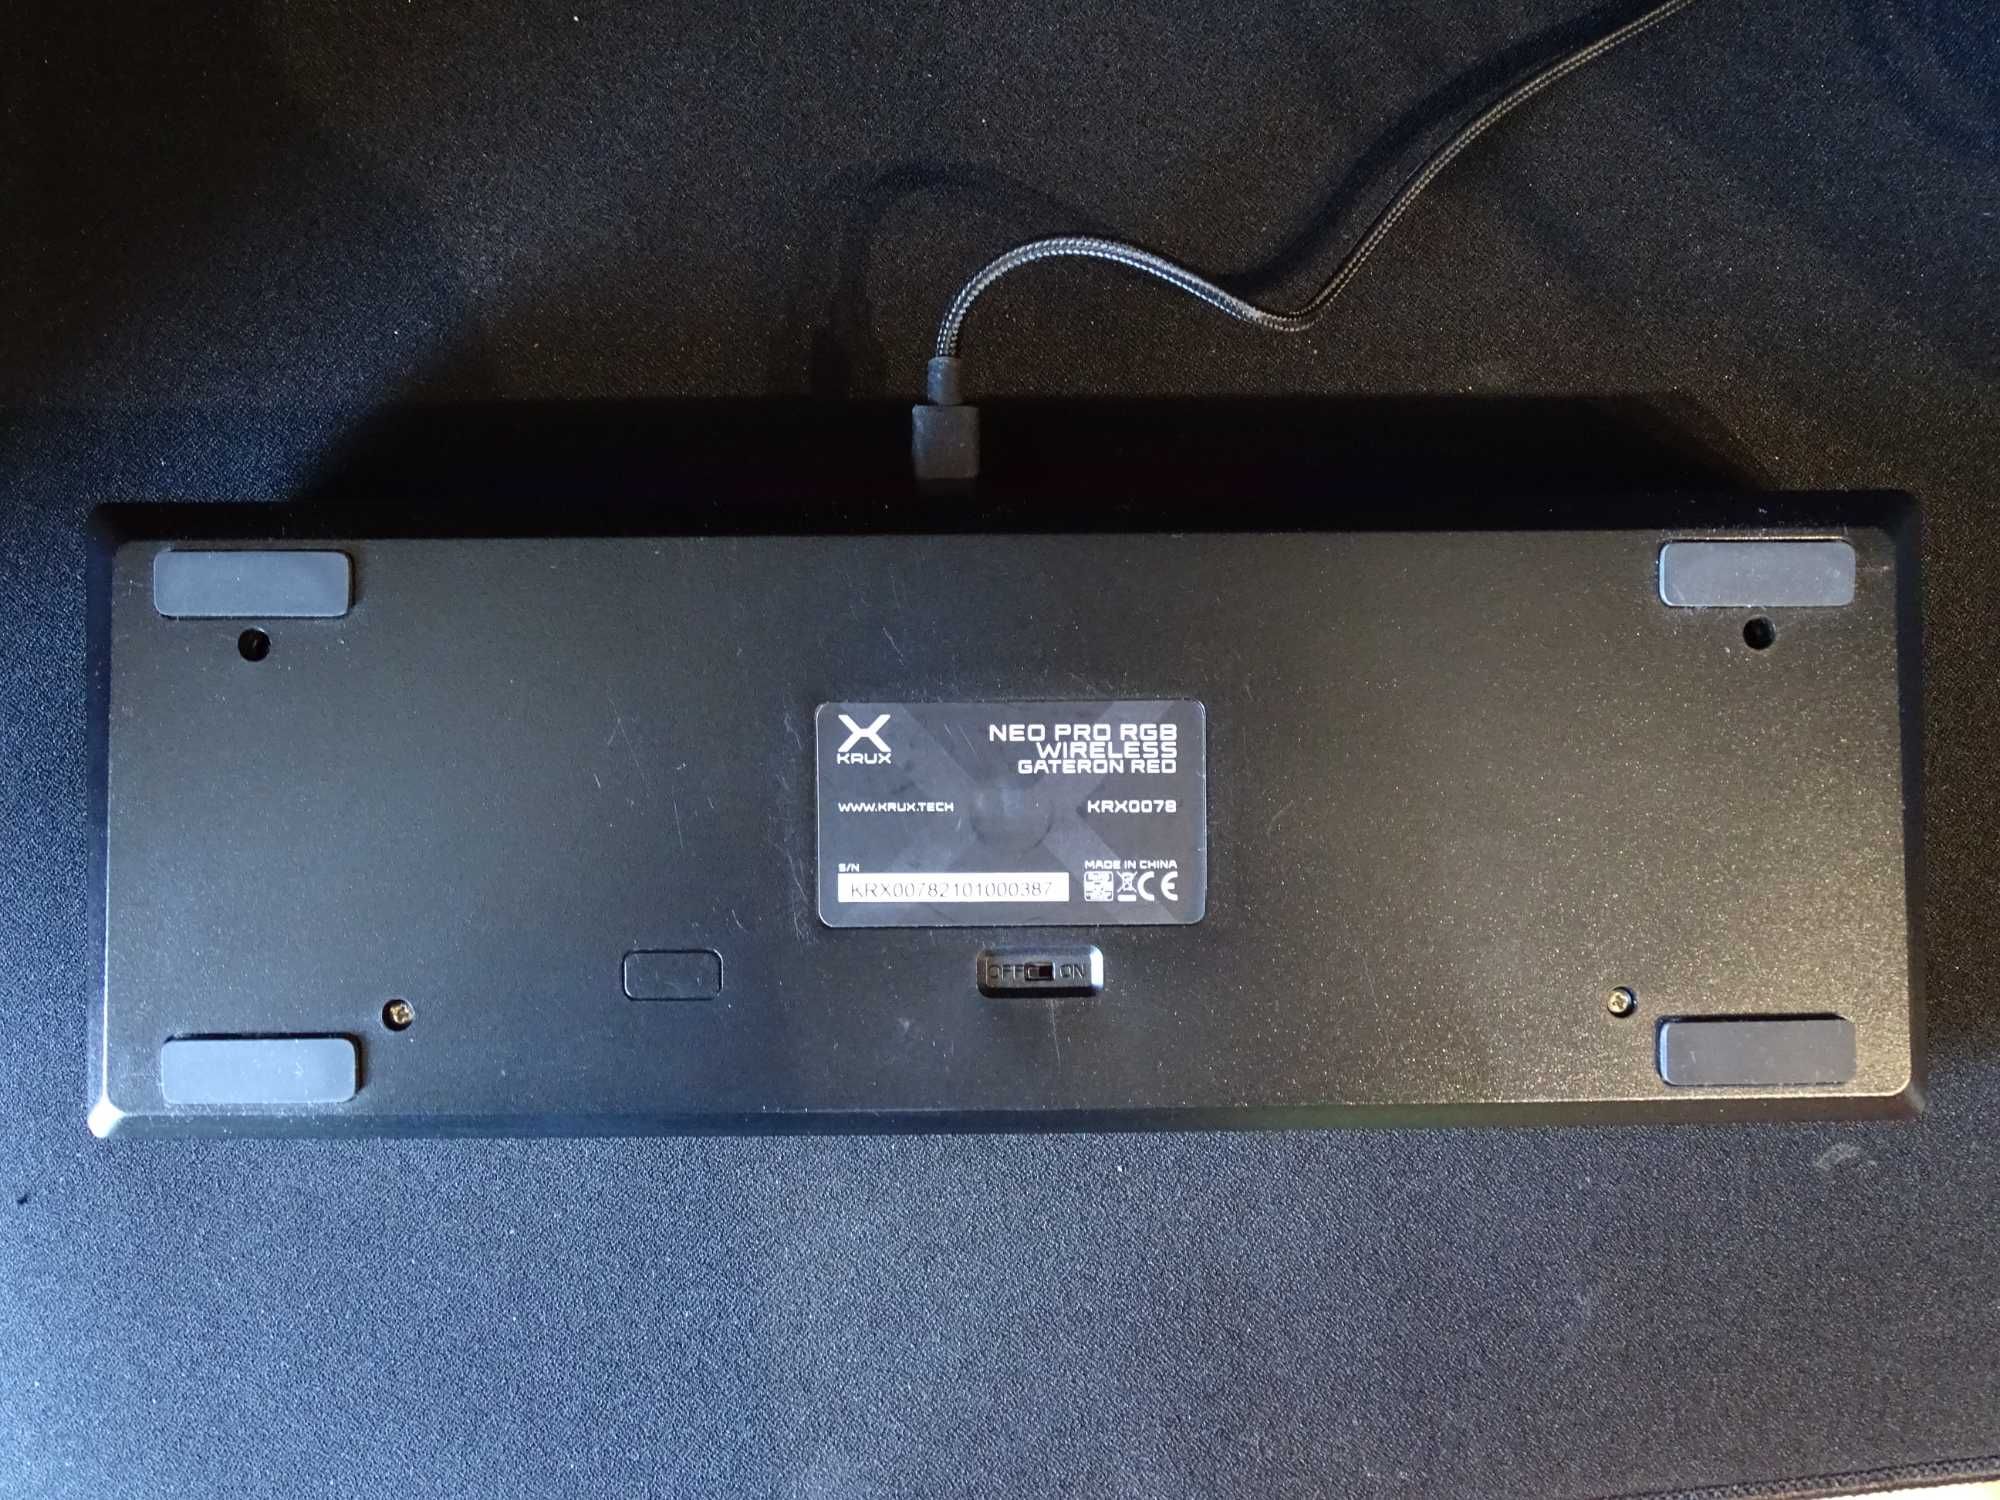 Klawiatura bezprzewodowa Krux Neo Pro RGB Wireless Gateron Red KRX0078